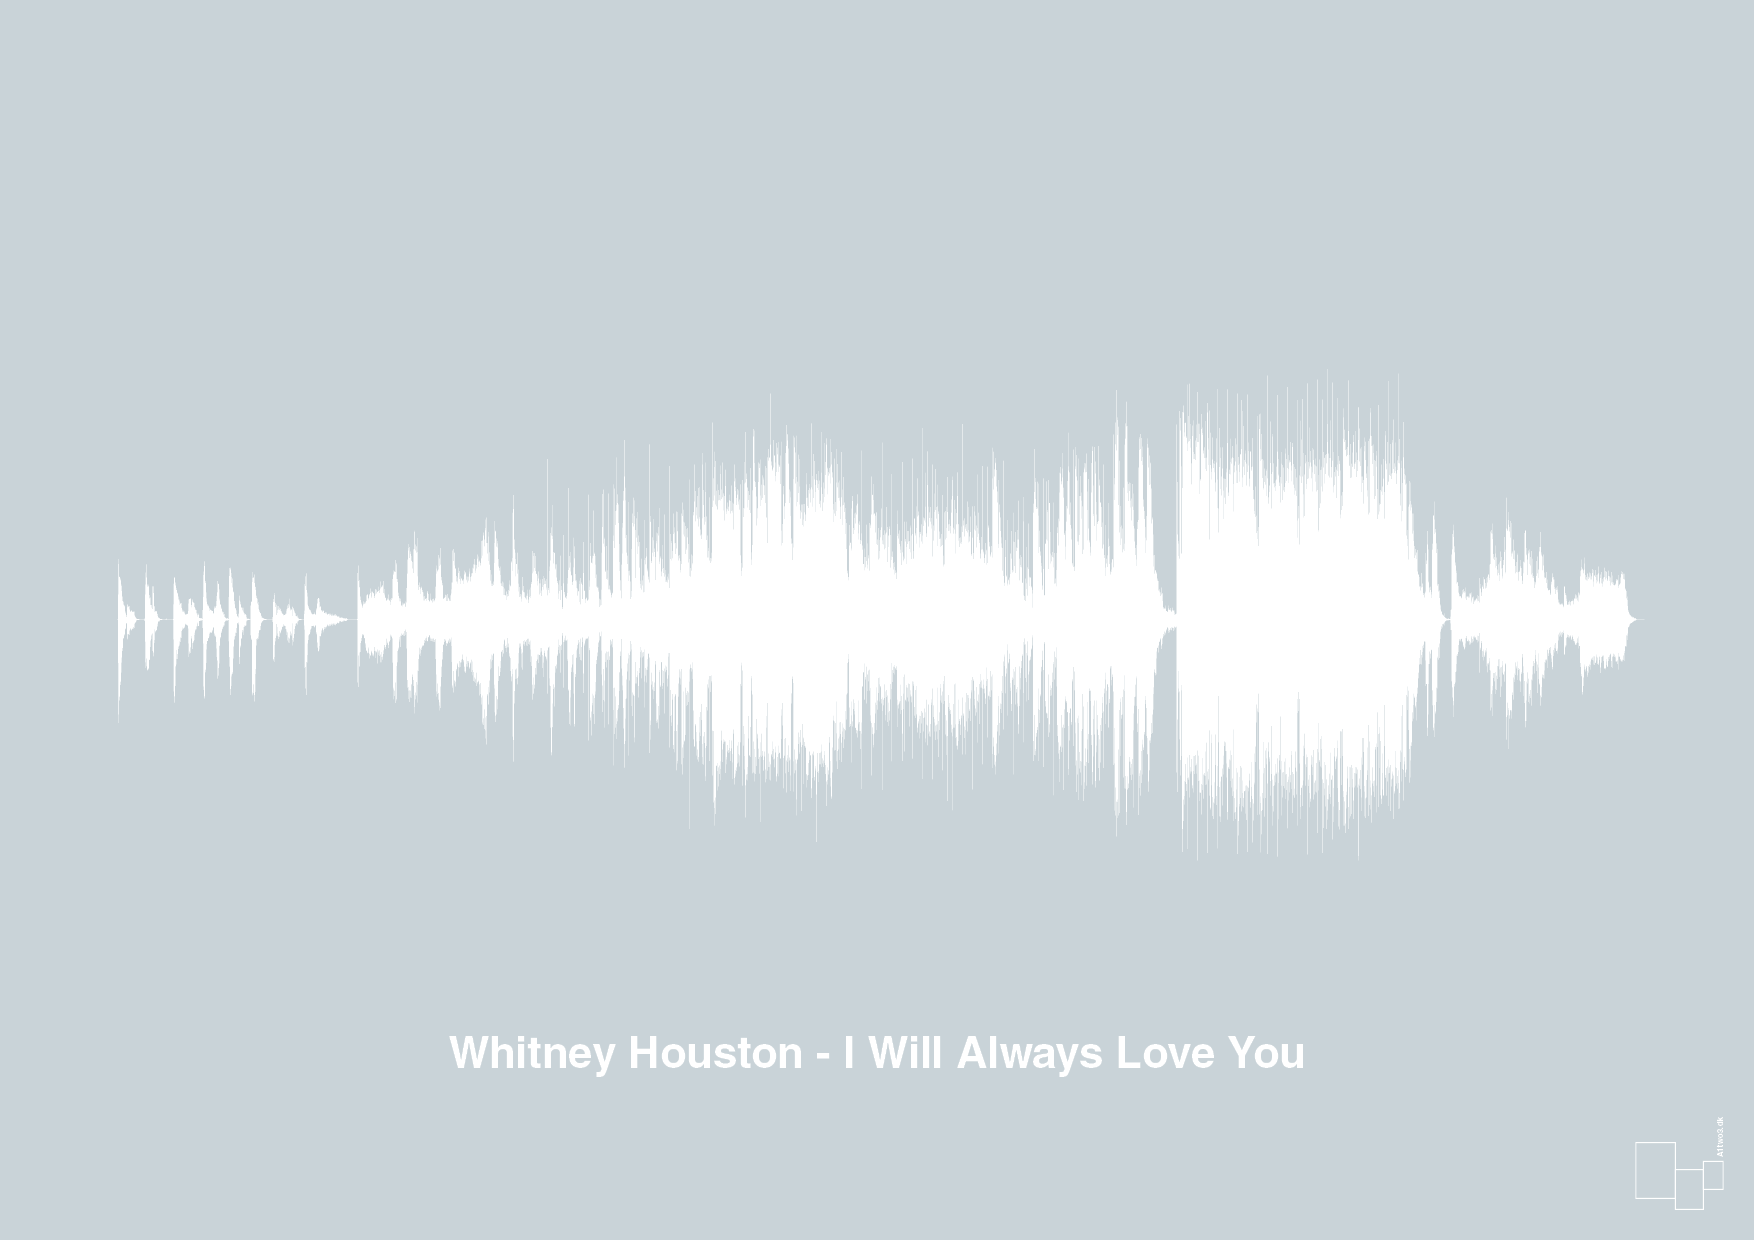 whitney houston - i will always love you - Plakat med Musik i Light Drizzle